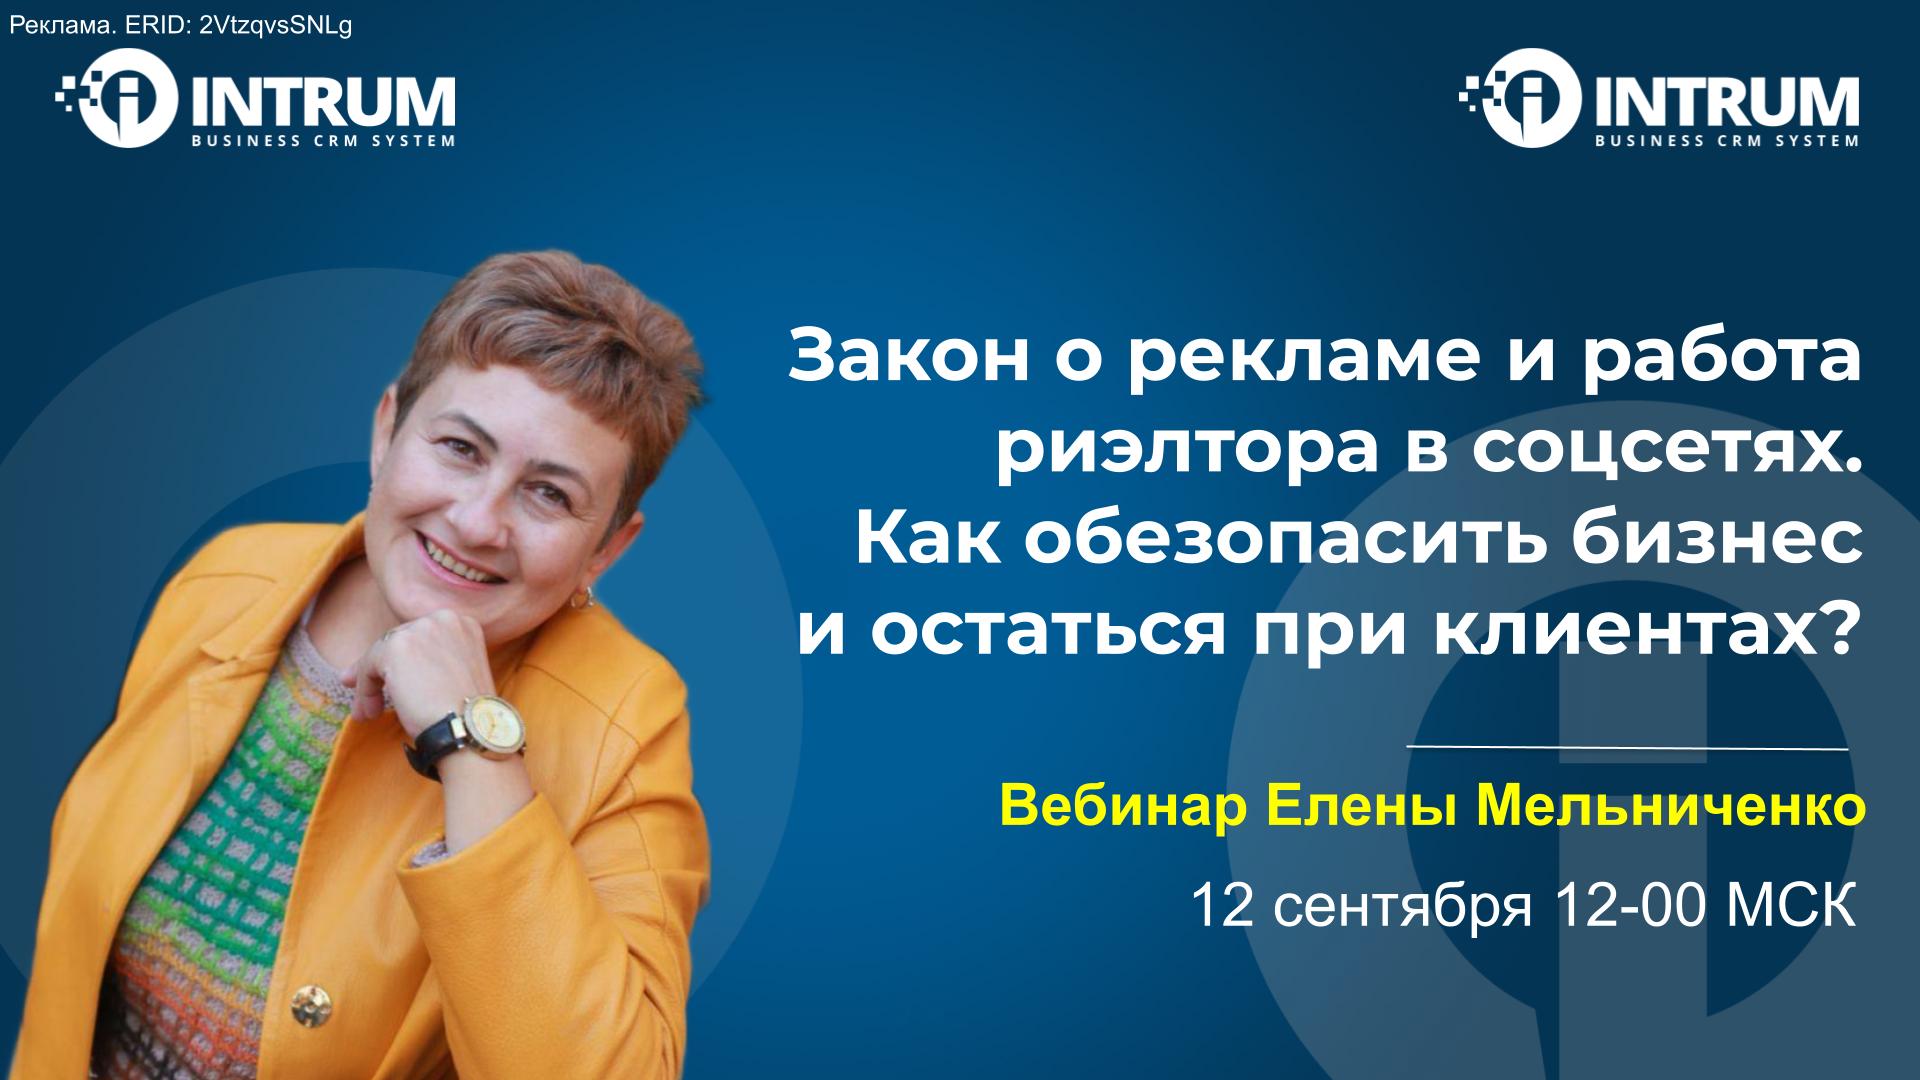 Вебинар Елены Мельниченко 